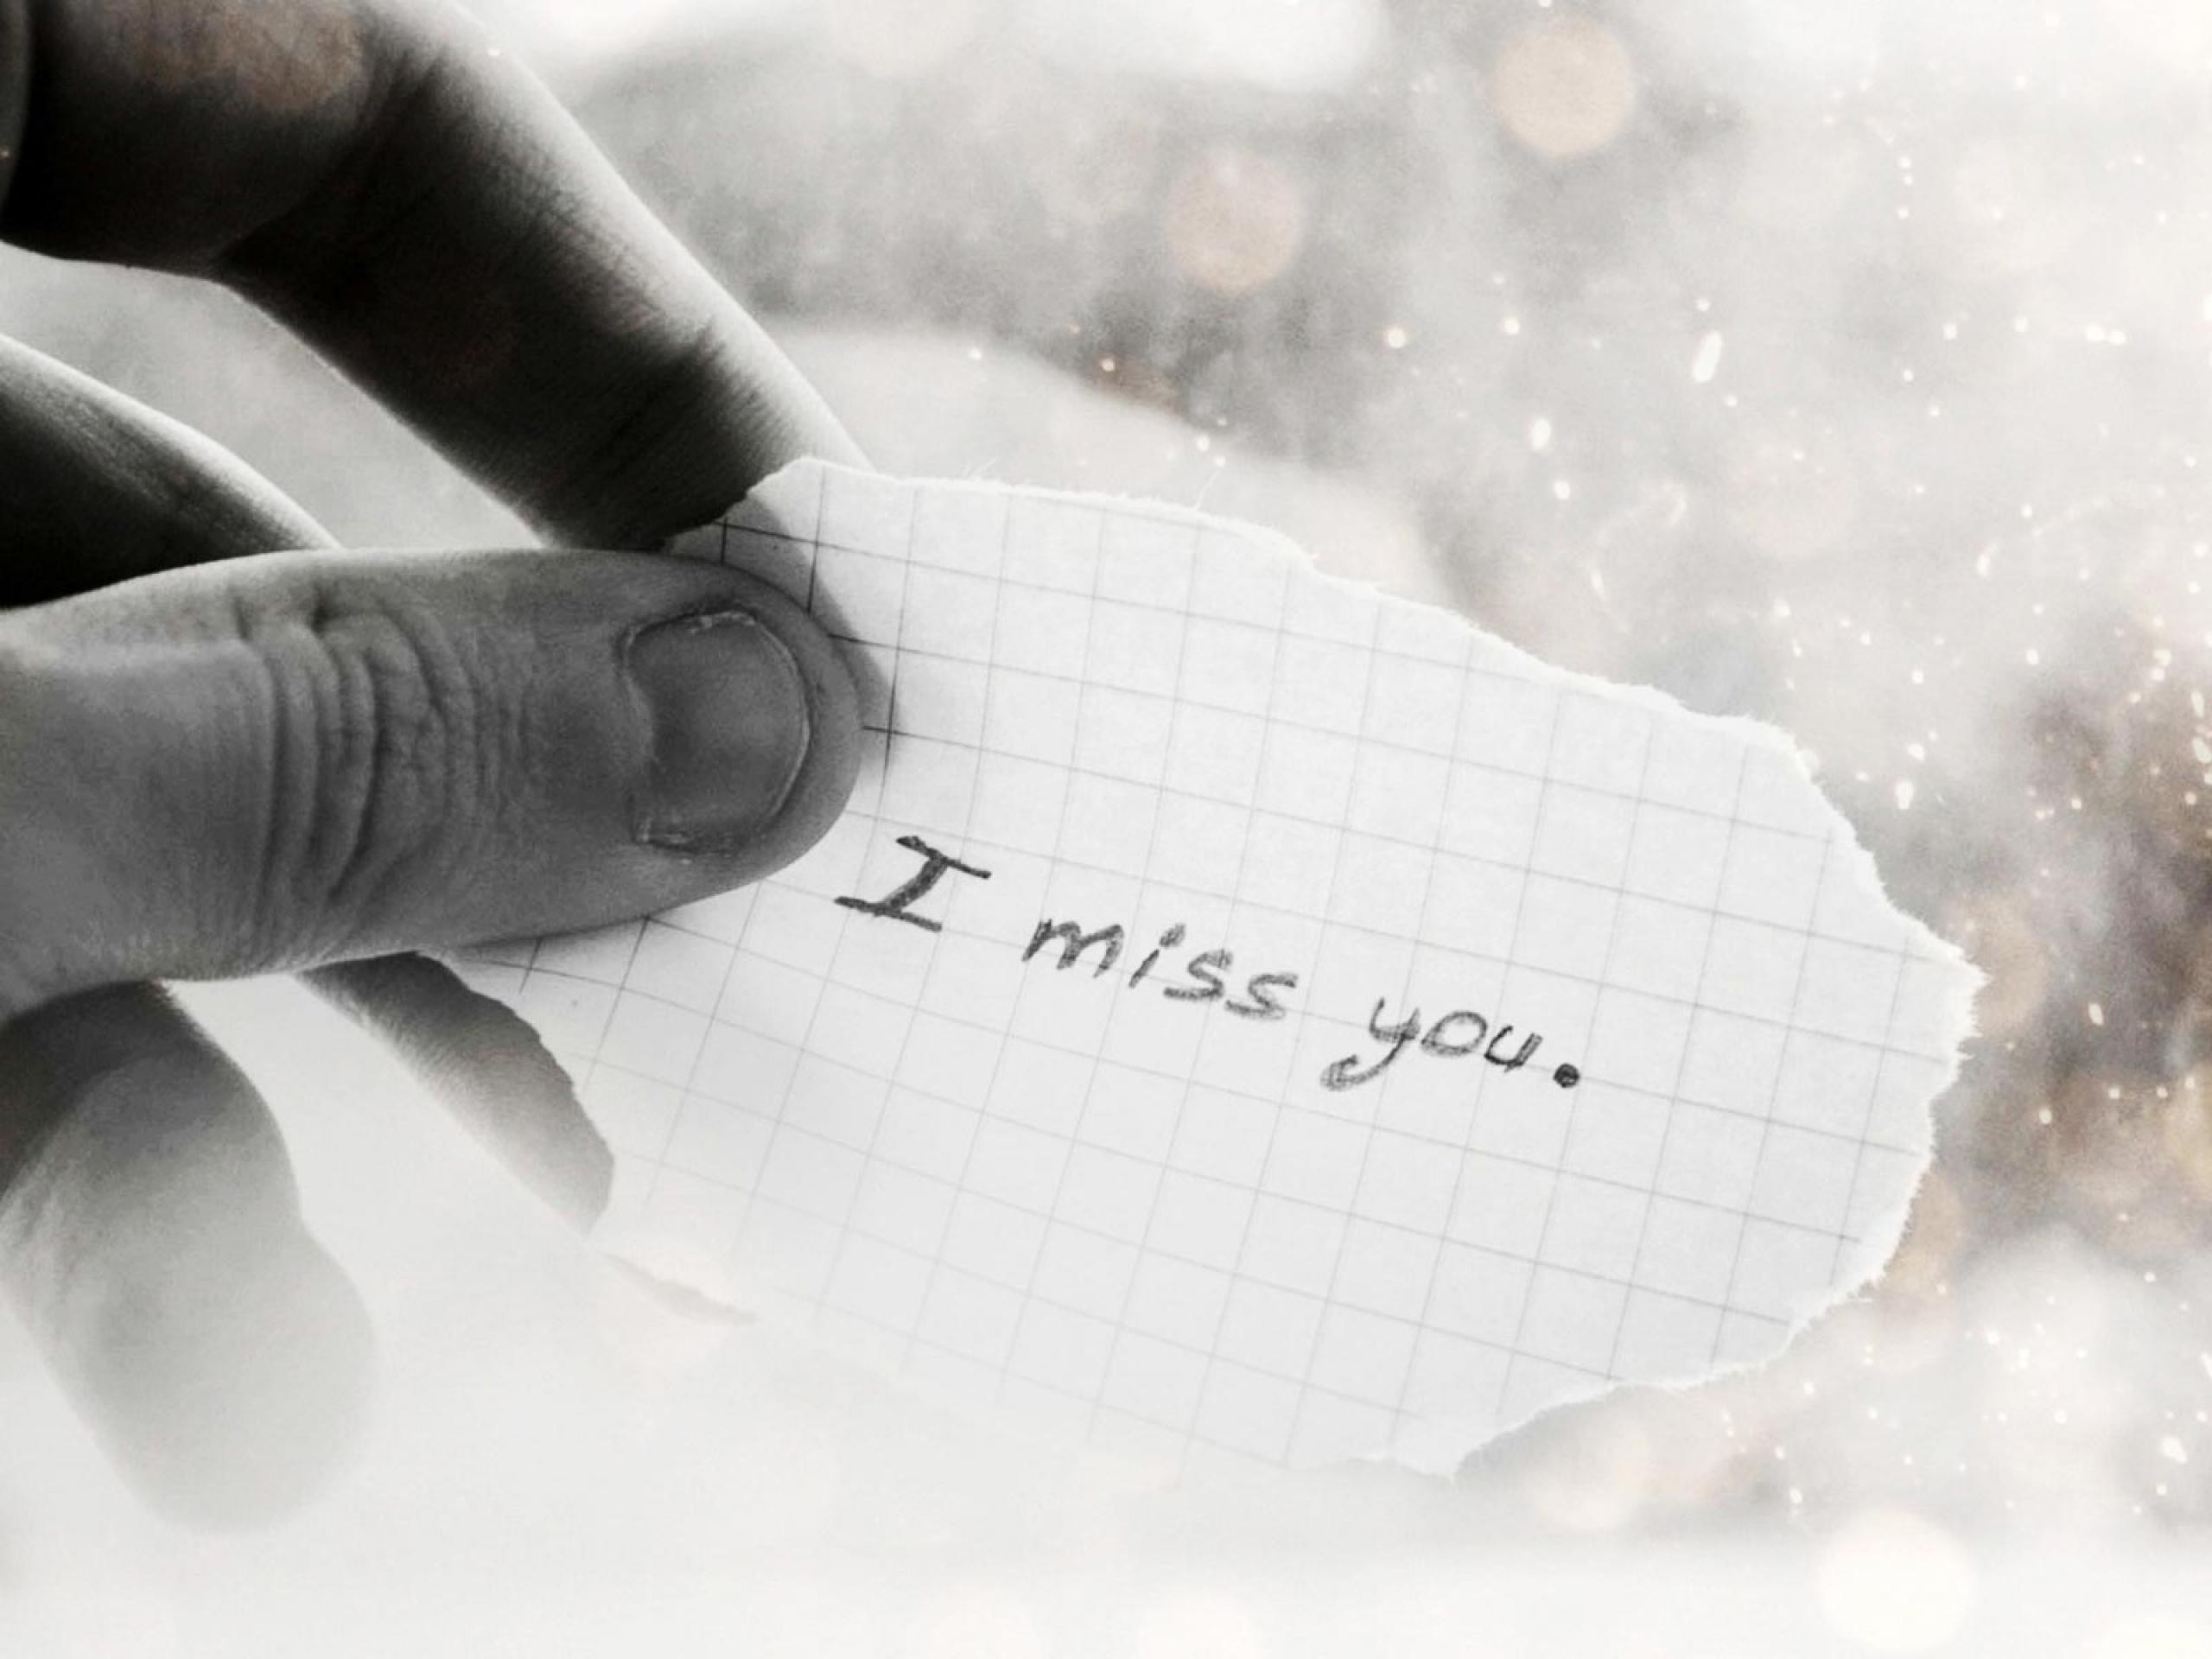 Sad Miss My Friend - HD Wallpaper 